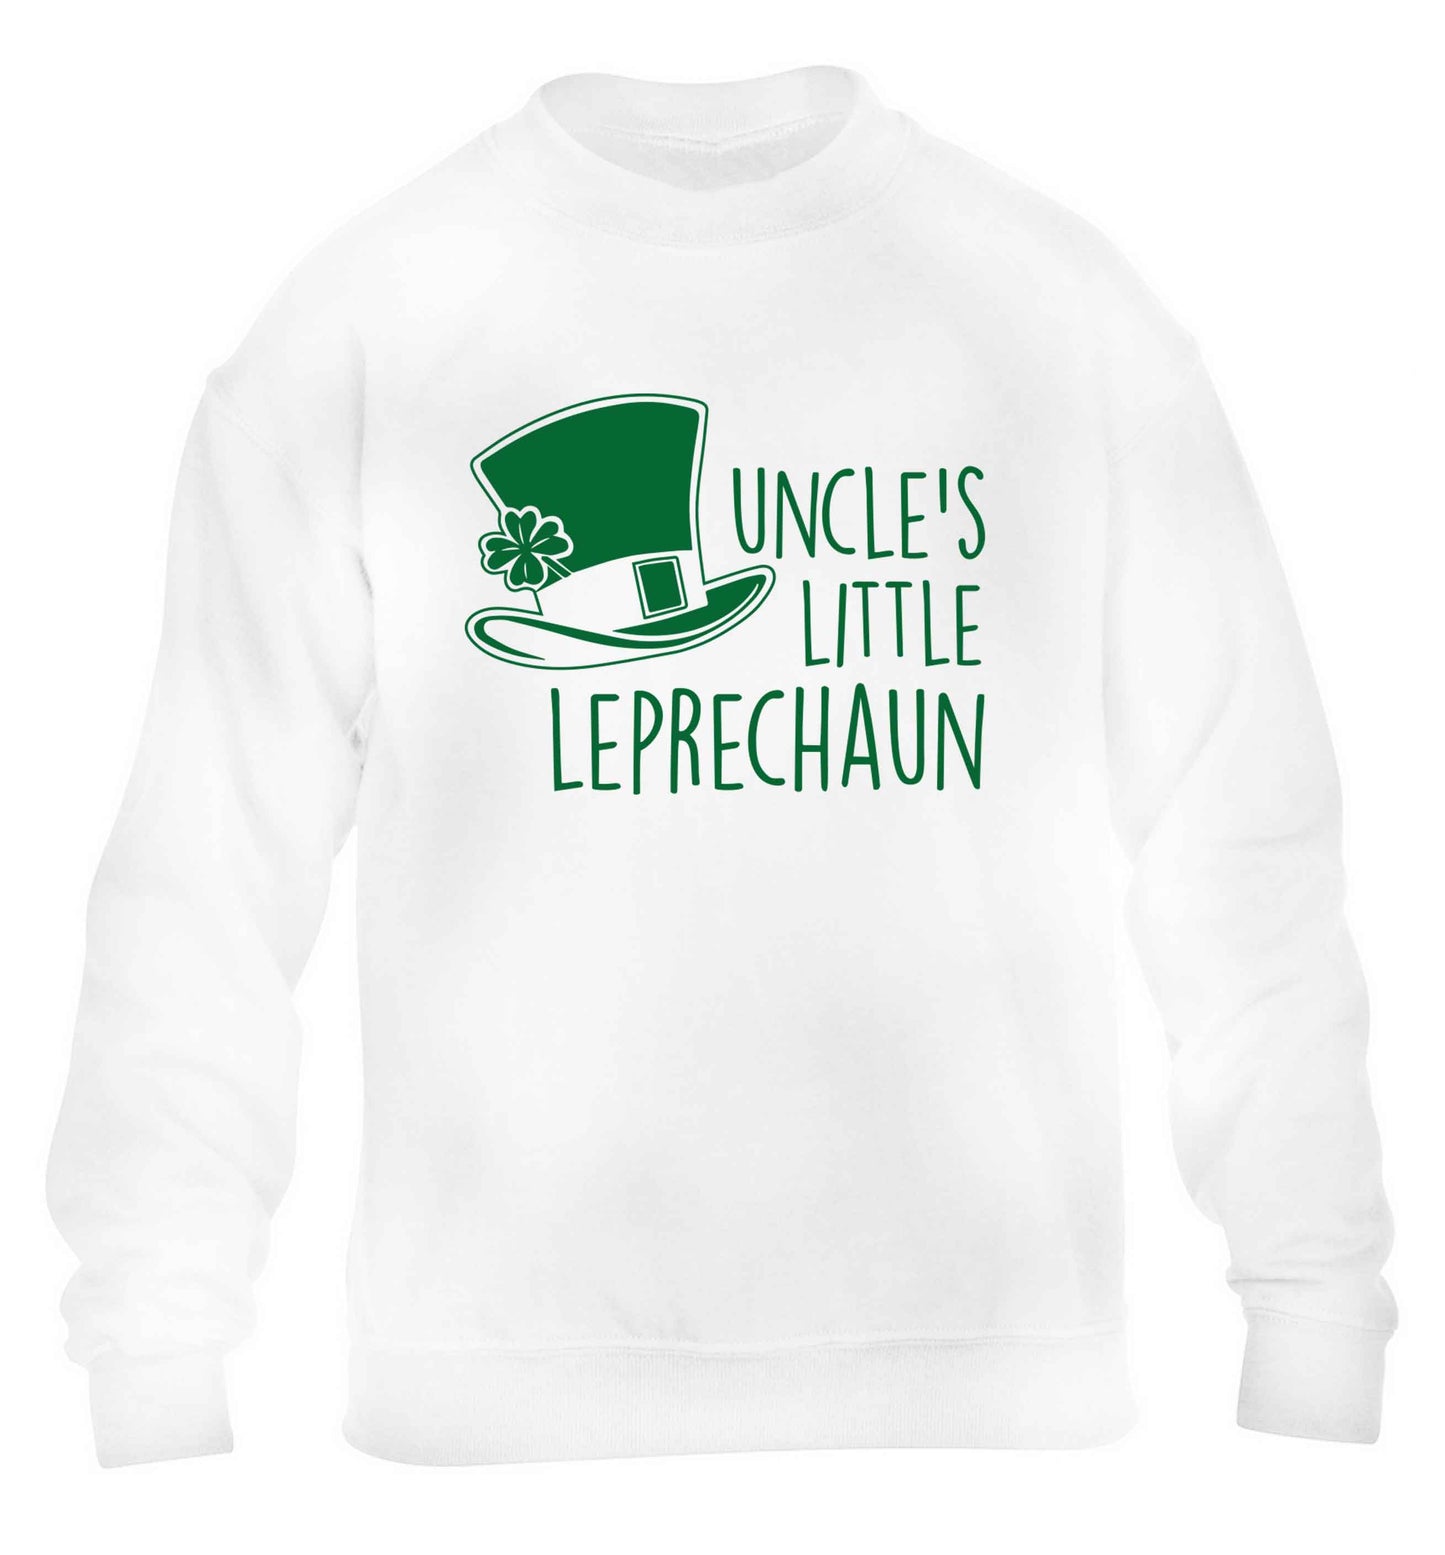 Uncles little leprechaun children's white sweater 12-13 Years